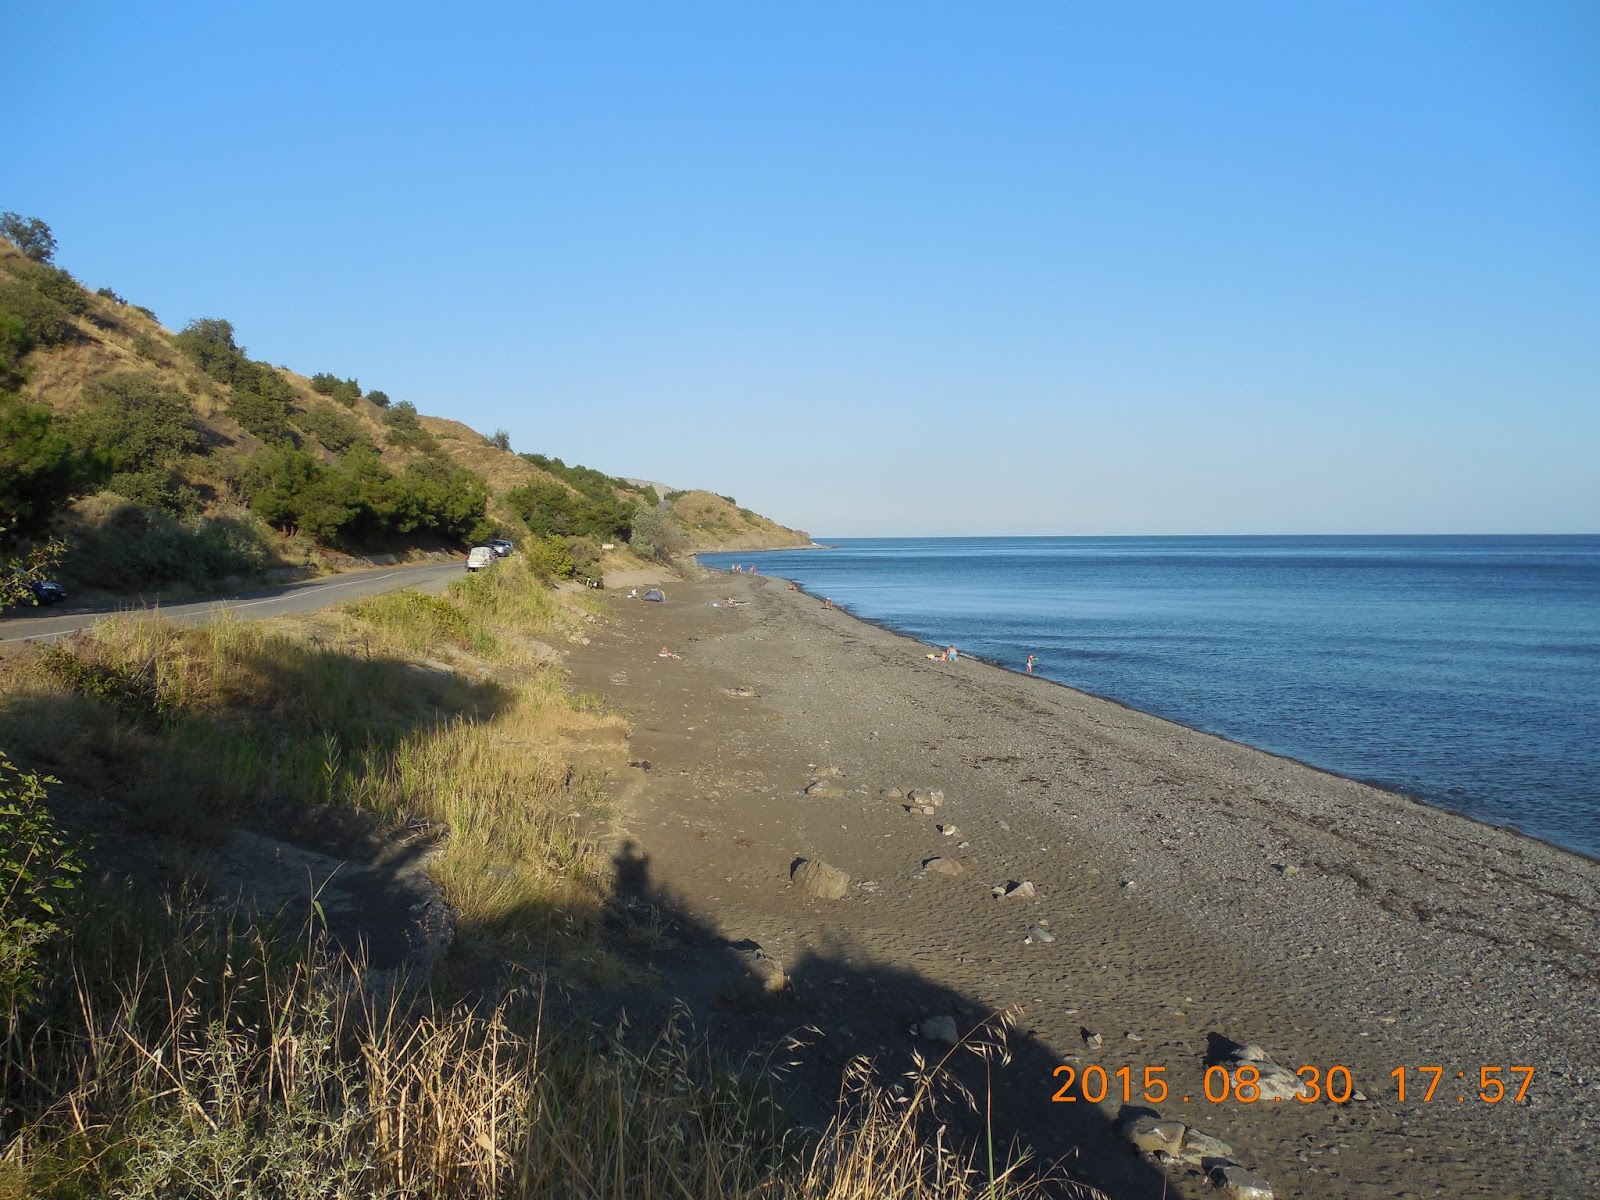 Foto van Morskoe wild beach met grijze kiezel oppervlakte